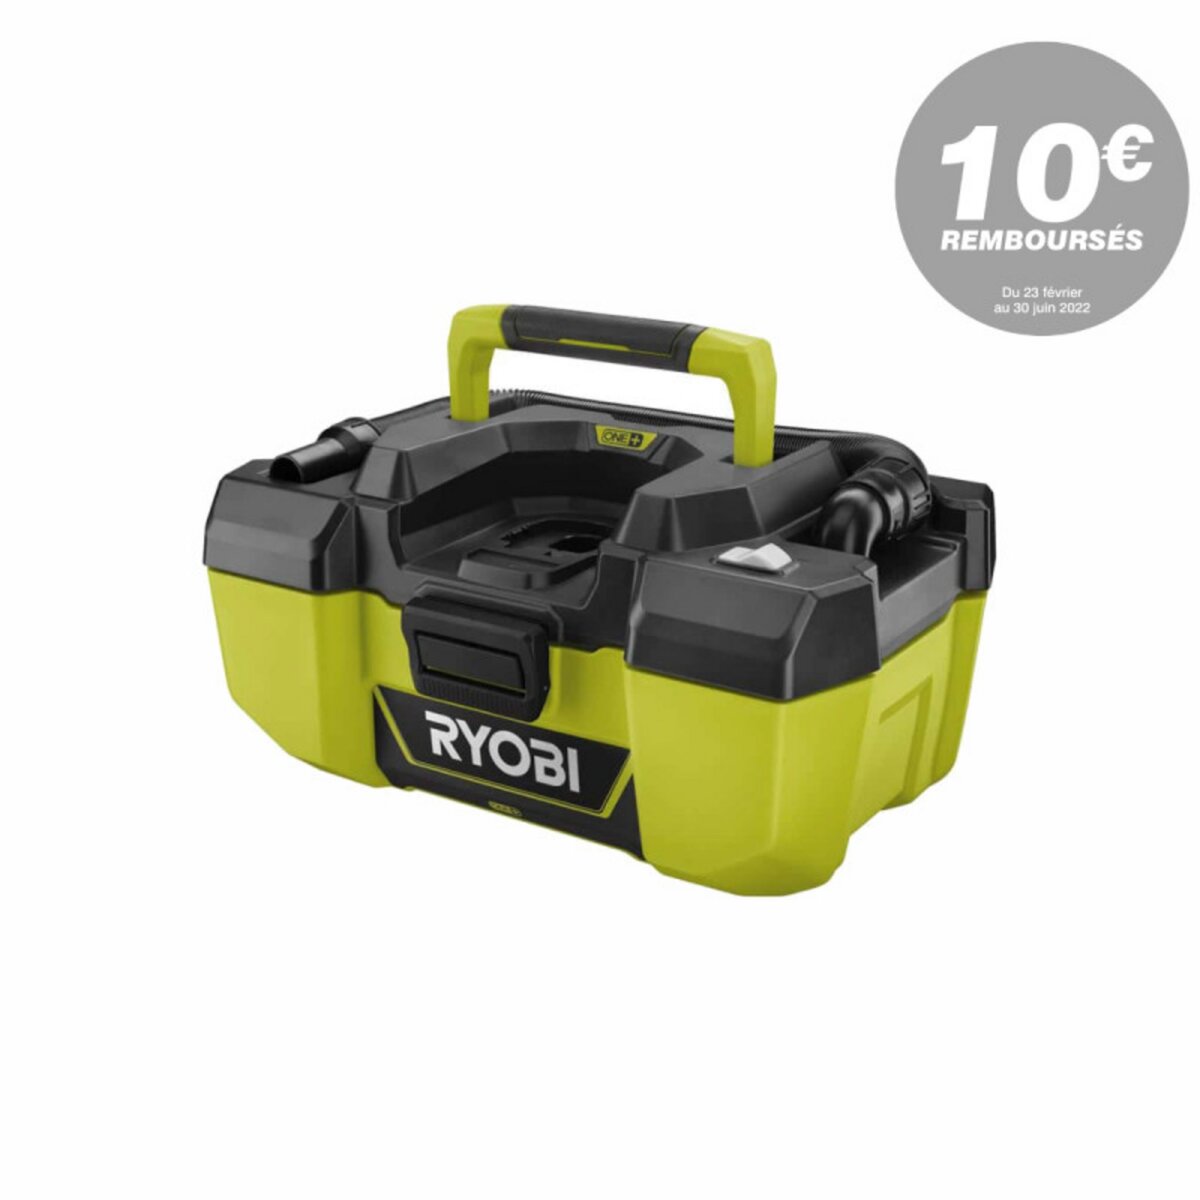 Ryobi Aspirateur d'atelier RYOBI 18V One Plus - sans batterie ni chargeur - R18PV-0